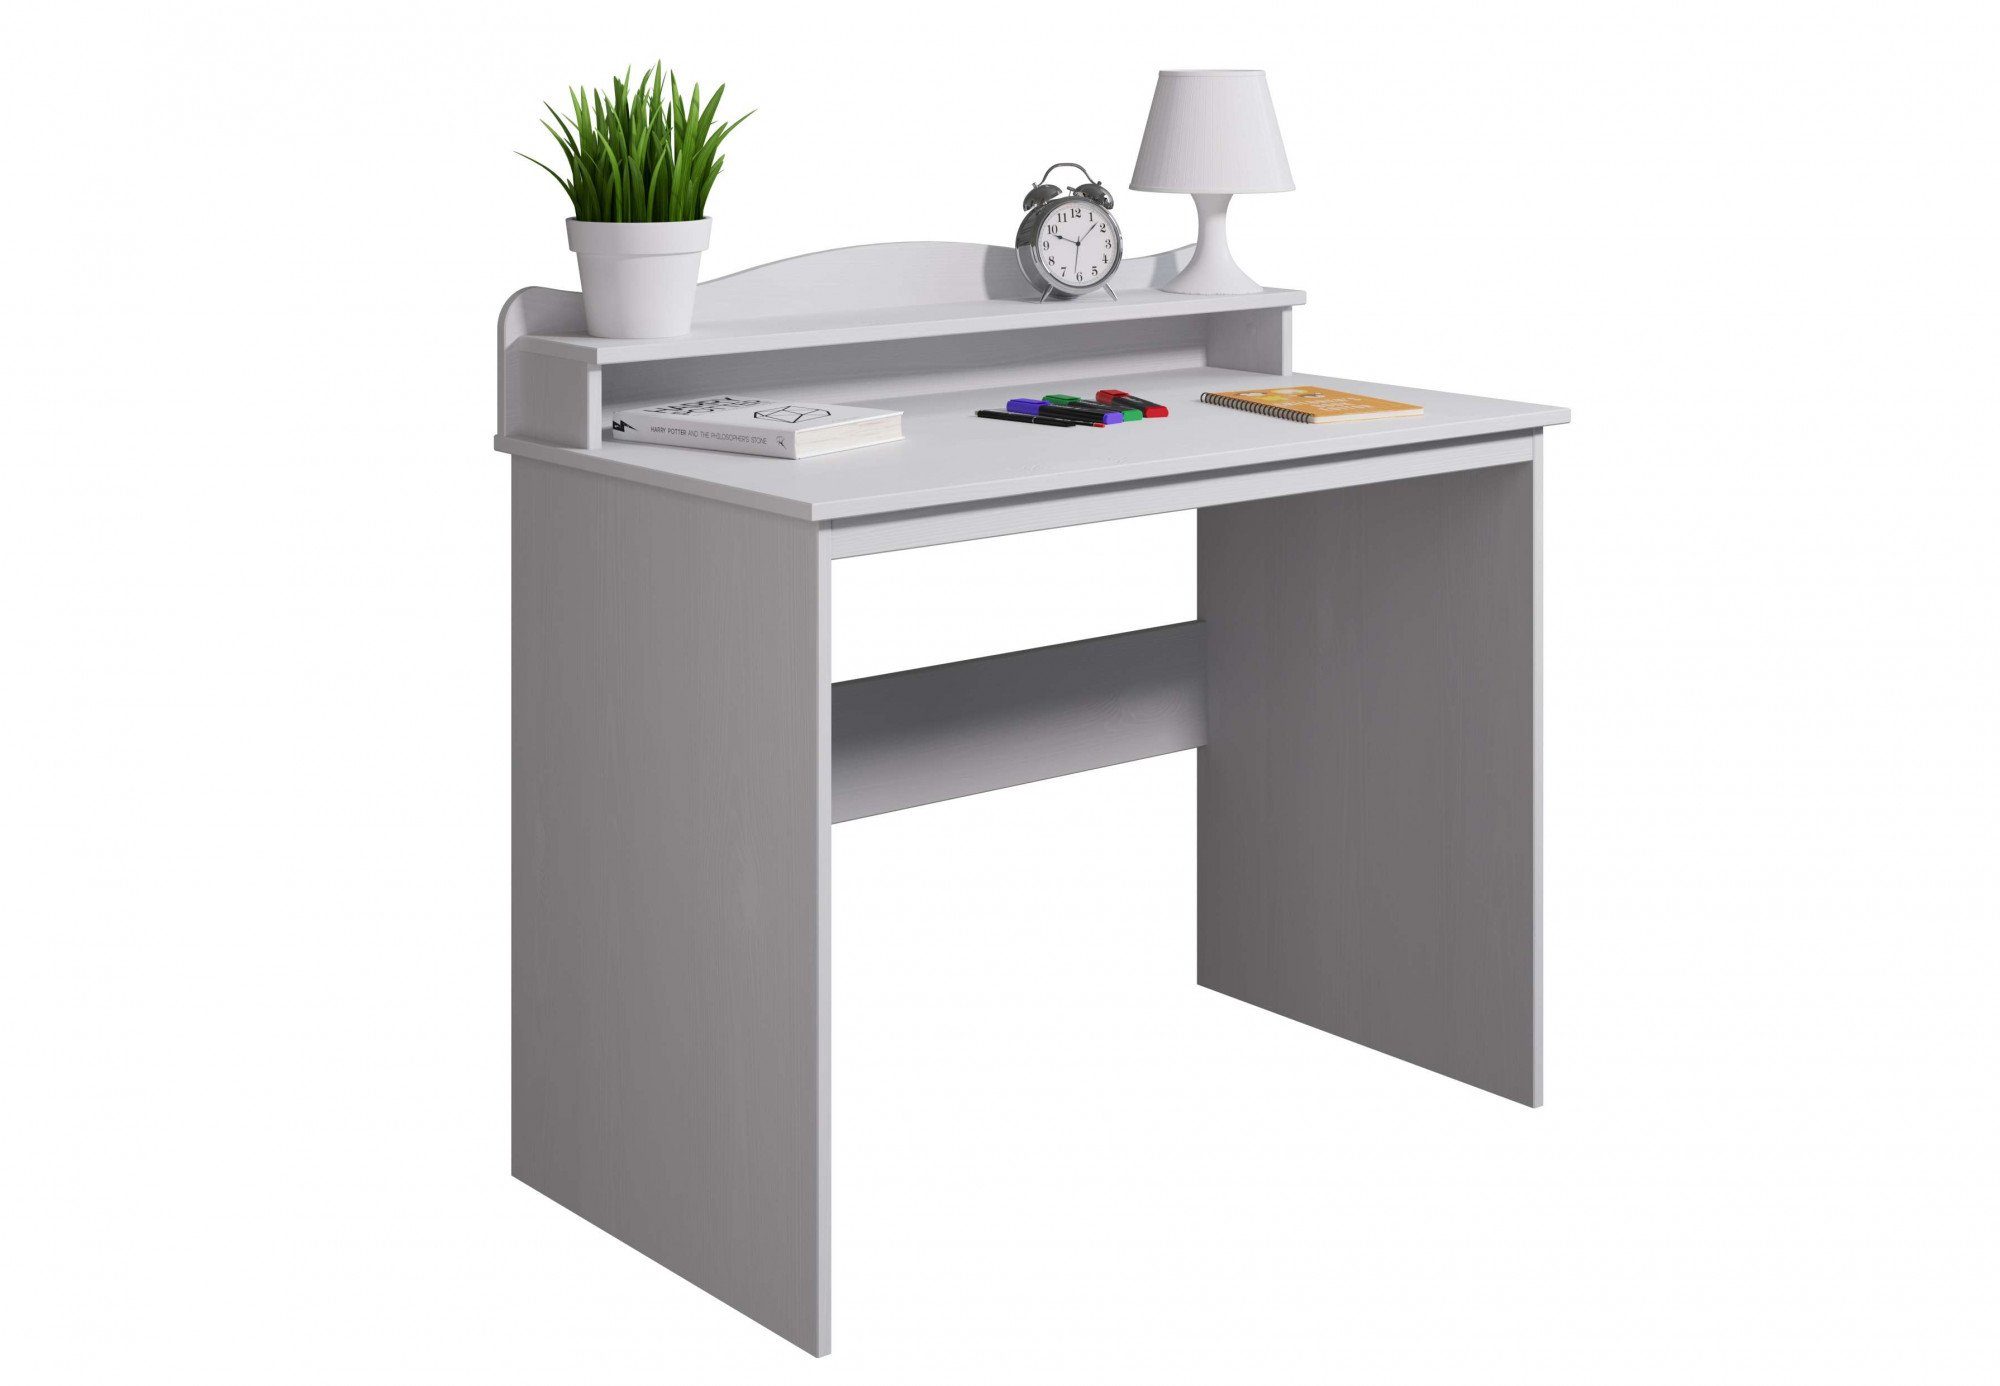 Home affaire Schreibtisch Lesve, aus massiver Kiefer, mit Schreibtischaufsatz weiß | weiß | weiß